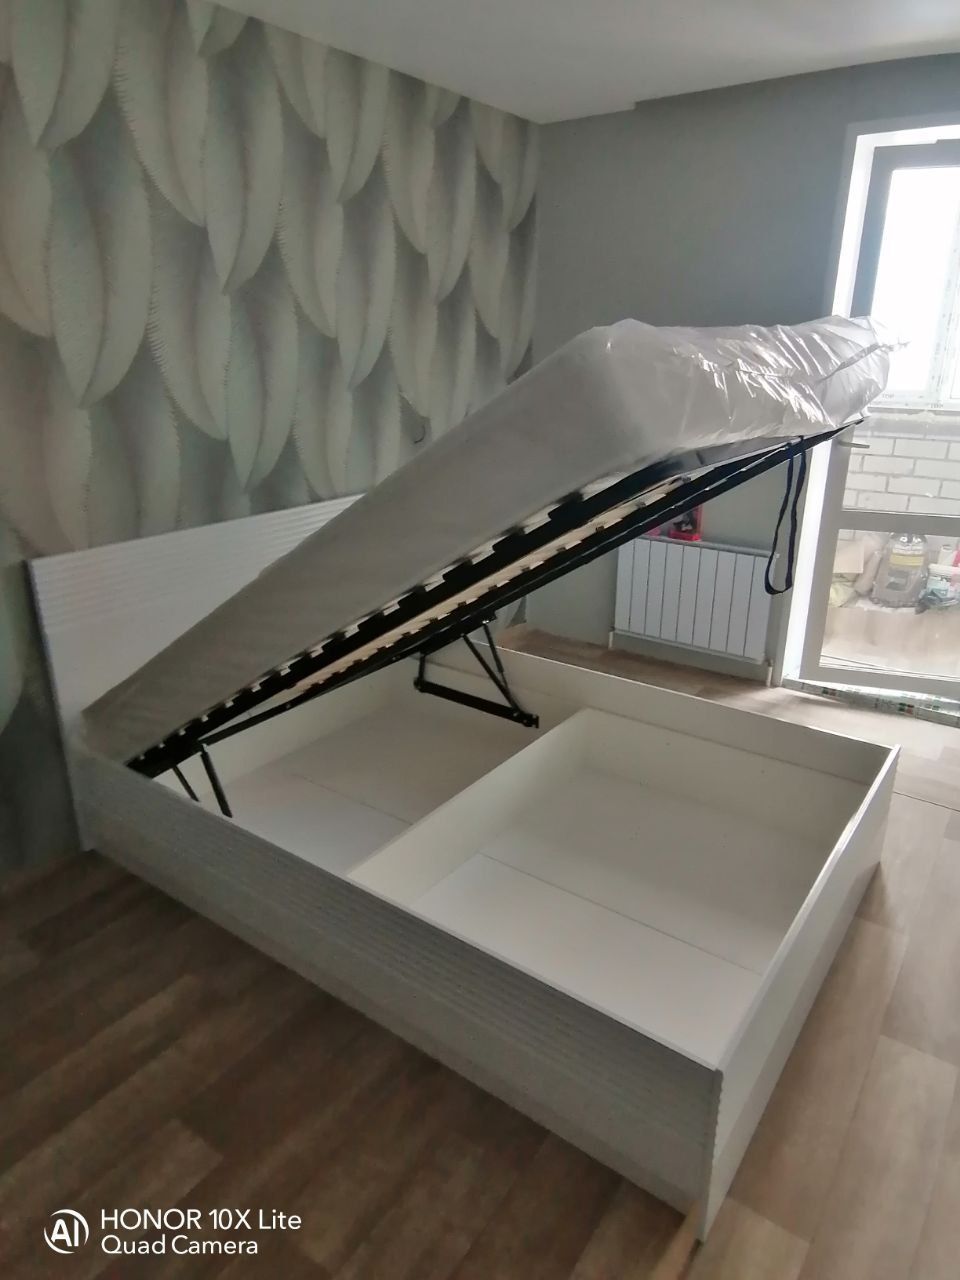 Двуспальная кровать "Афина" 160 х 200 с ортопедическим основанием цвет белый глянец  / sancho 2202